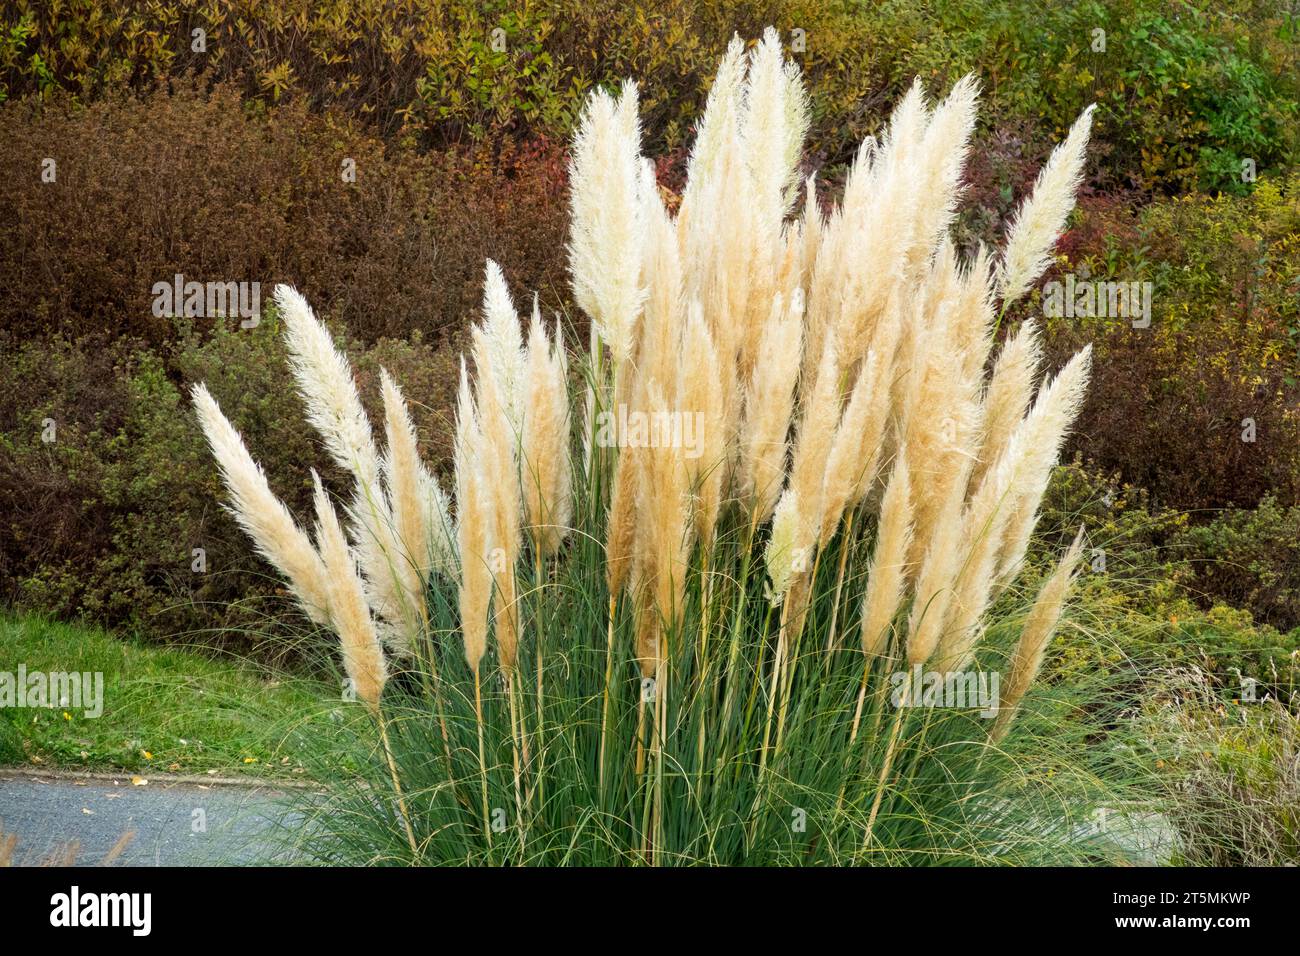 Autumn, Ornamental grass, Cortaderia selloana Pampas grass in the Garden Stock Photo